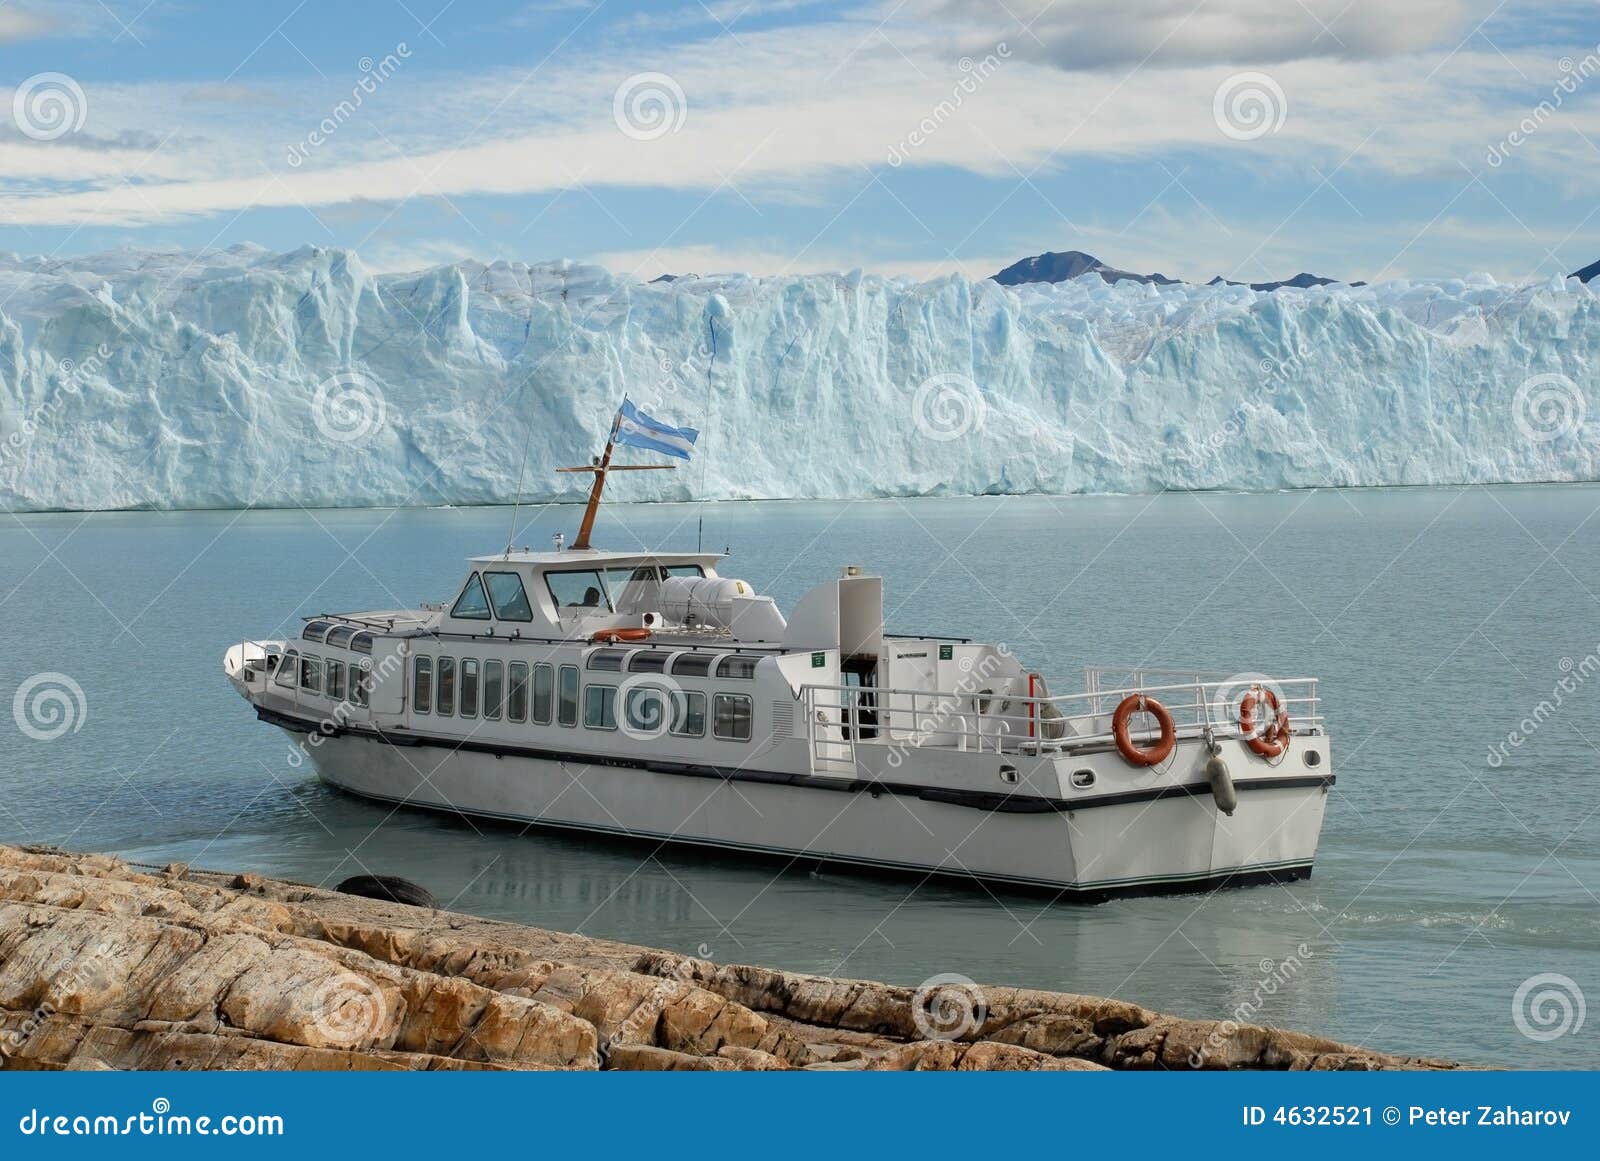 argentine excursion ship near the perito moreno gl